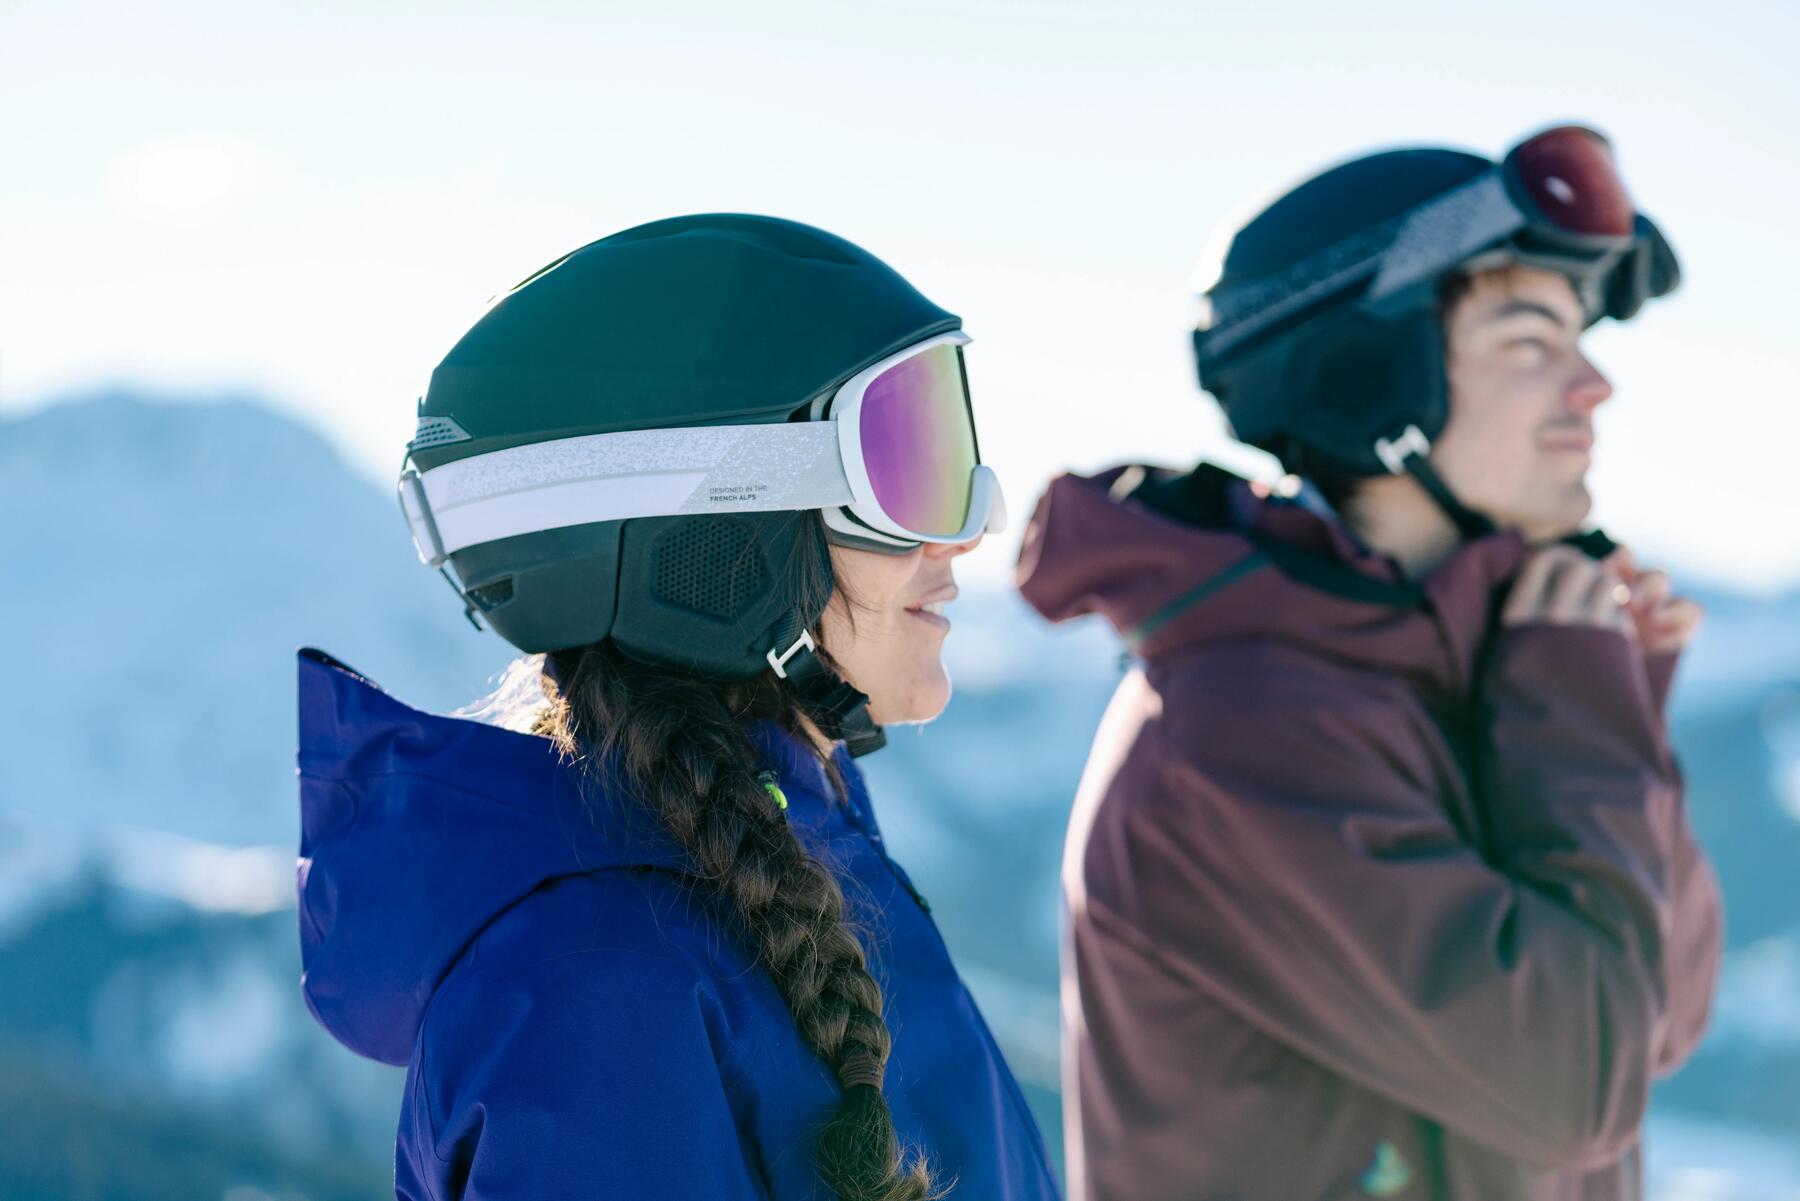 Comment choisir des skis adulte ?